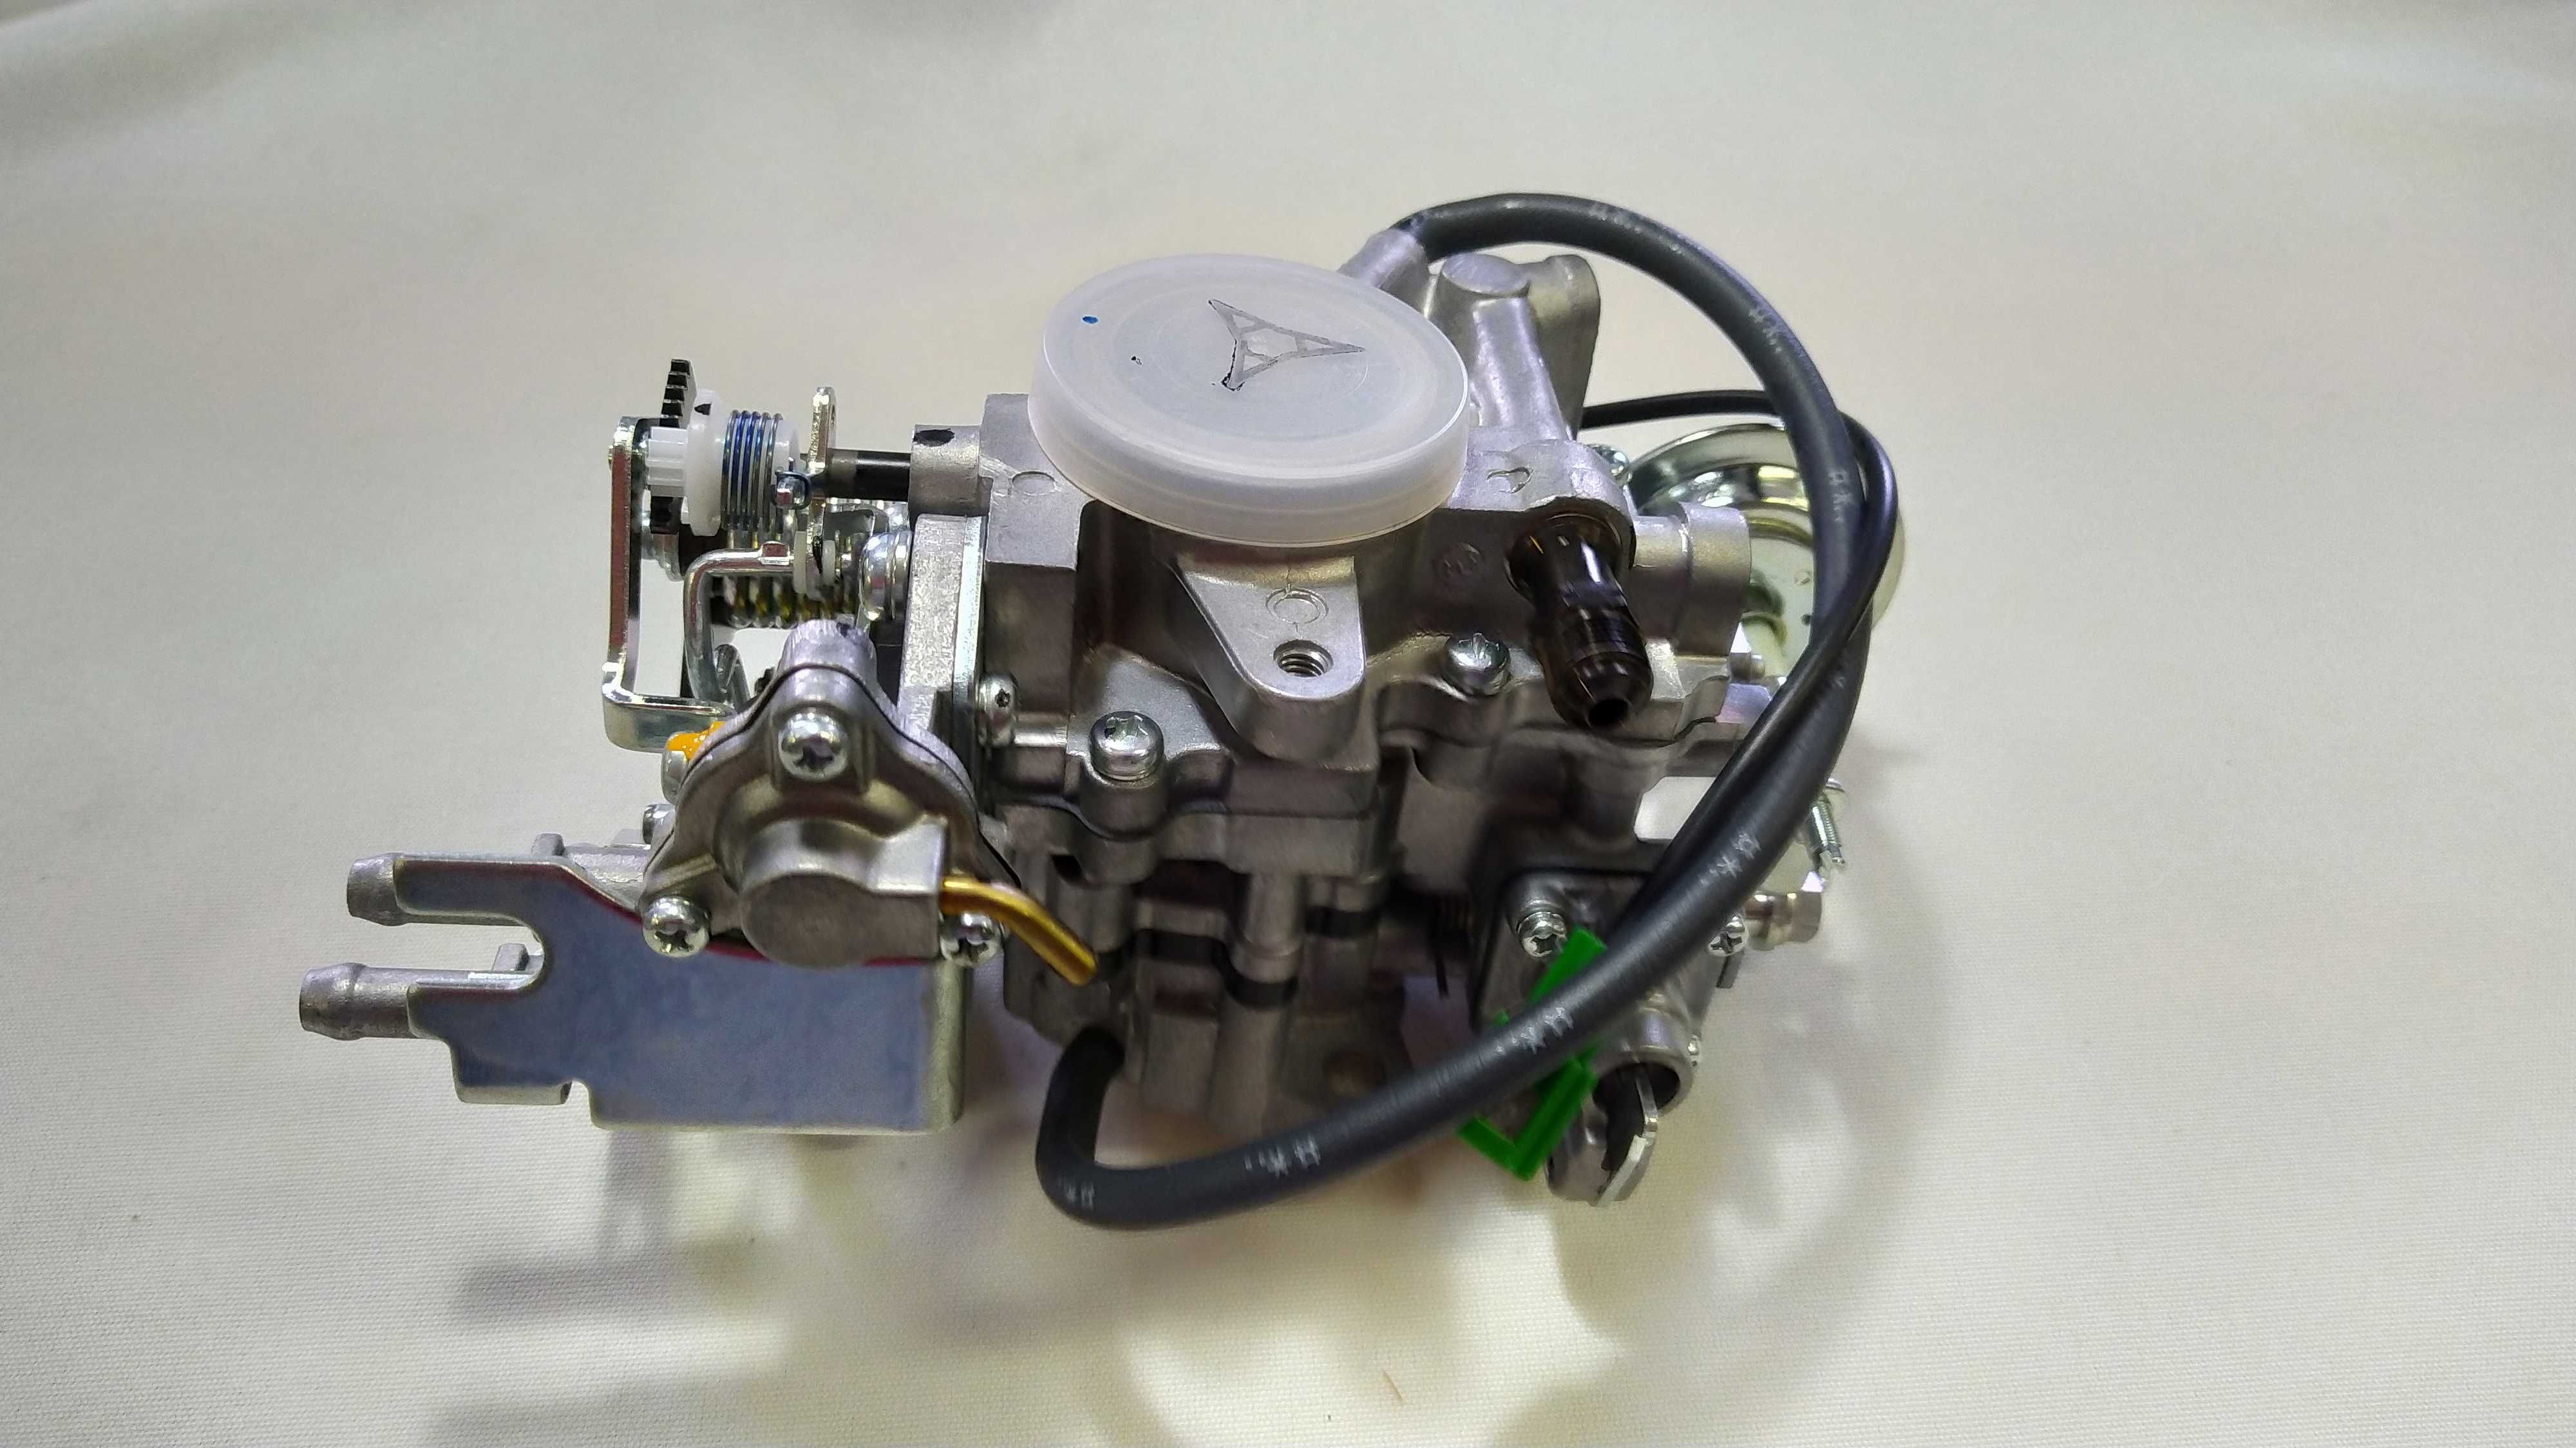 Карбюратор двигателя вилочного погрузчика. Двигатель Toyota 5K, 4Y.